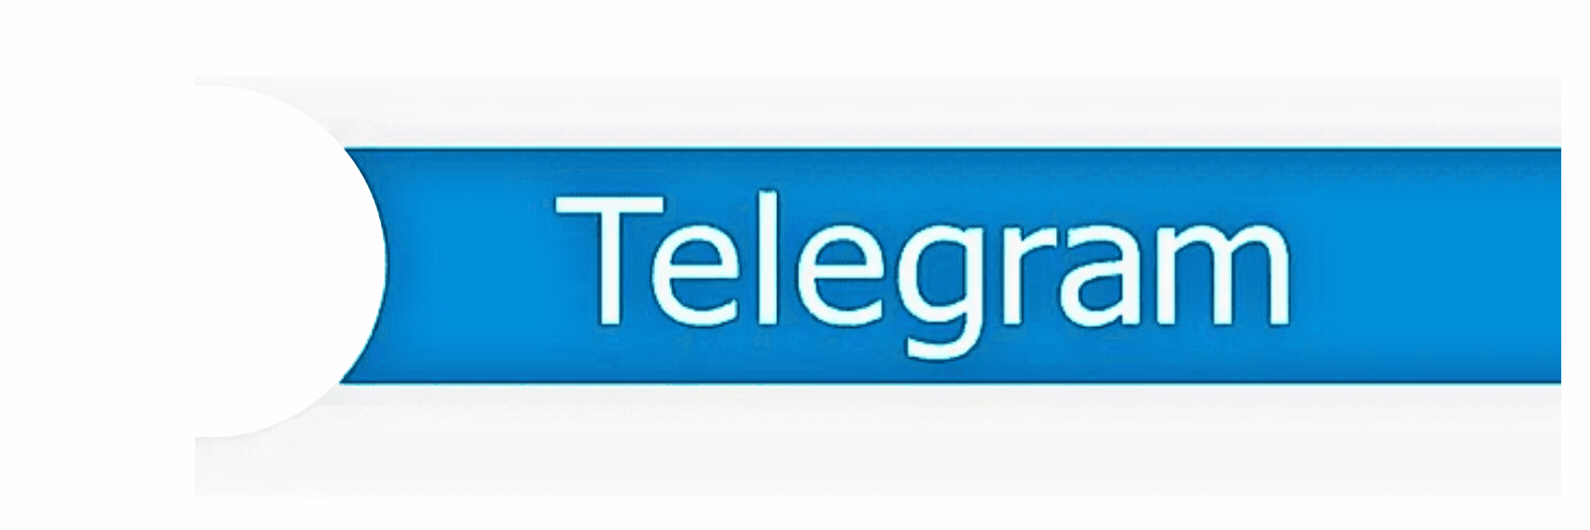 Заработок в Telegram без вложений